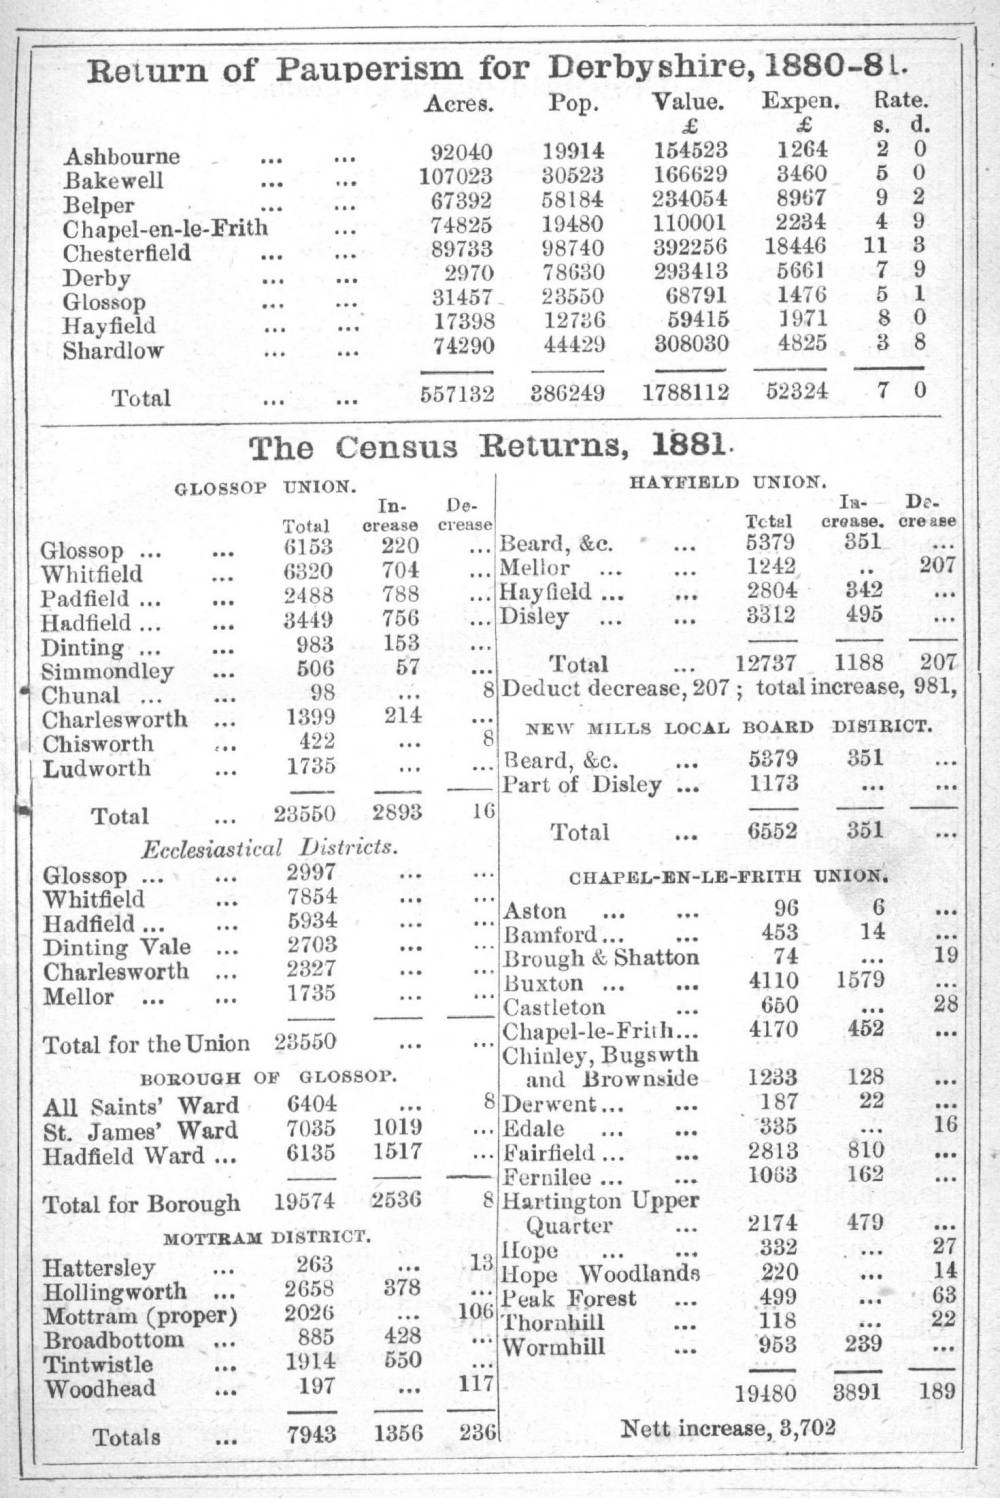 Almanac page